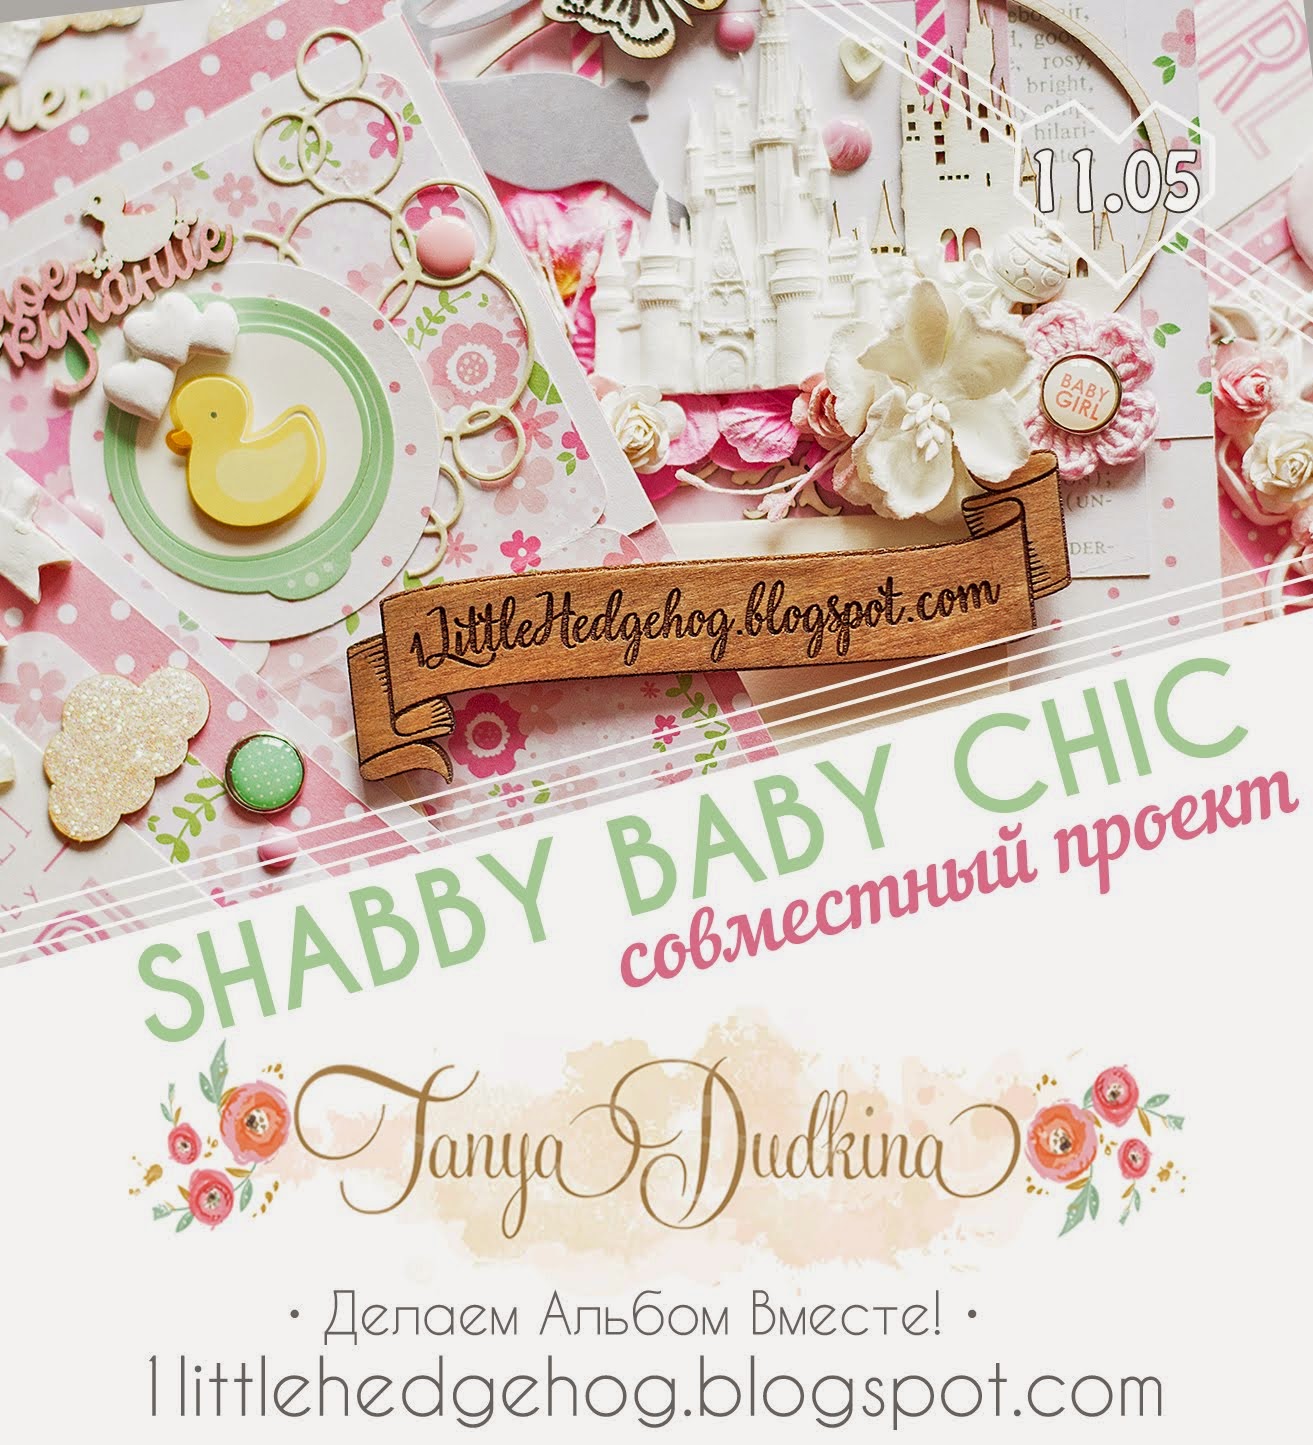 Совместный проект "Shabby Baby Chic" - детский альбом о самых волшебных моментах :)